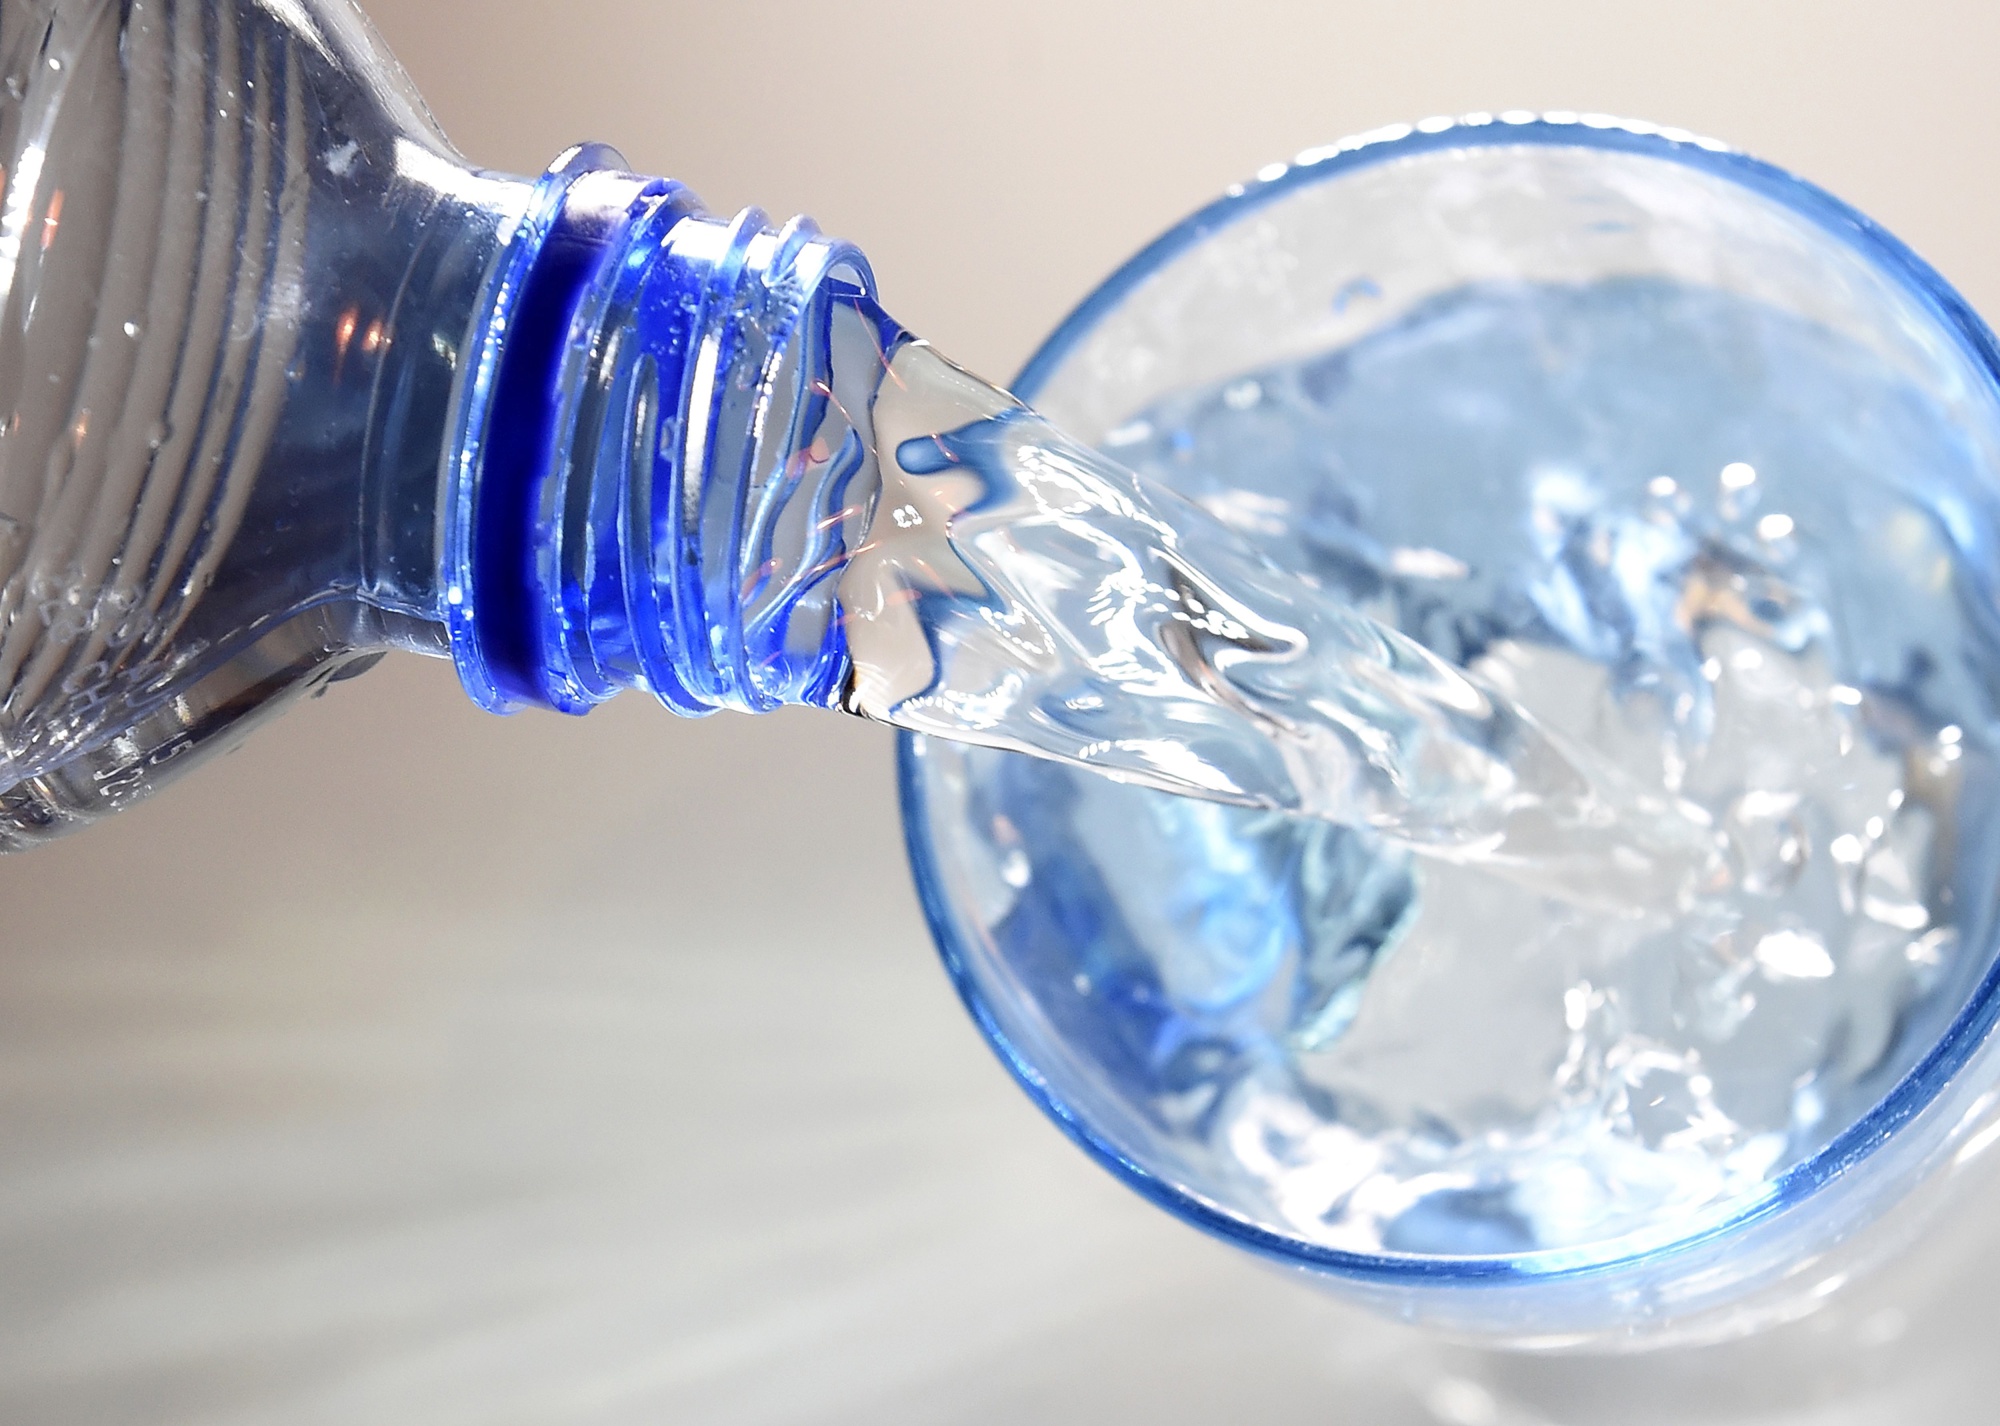 is aquafina tap water